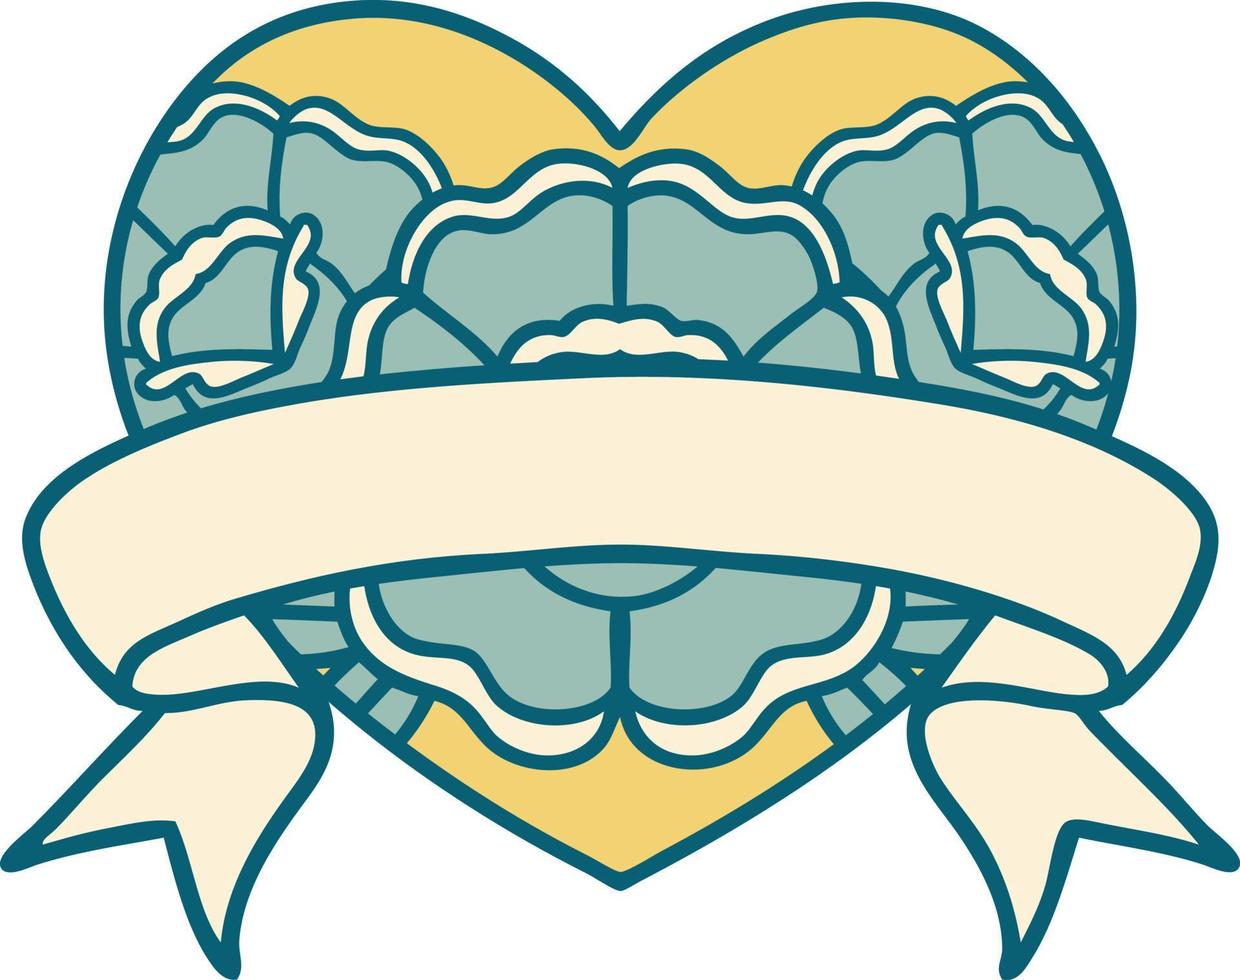 image emblématique de style tatouage d'un coeur et d'une bannière avec des fleurs vecteur